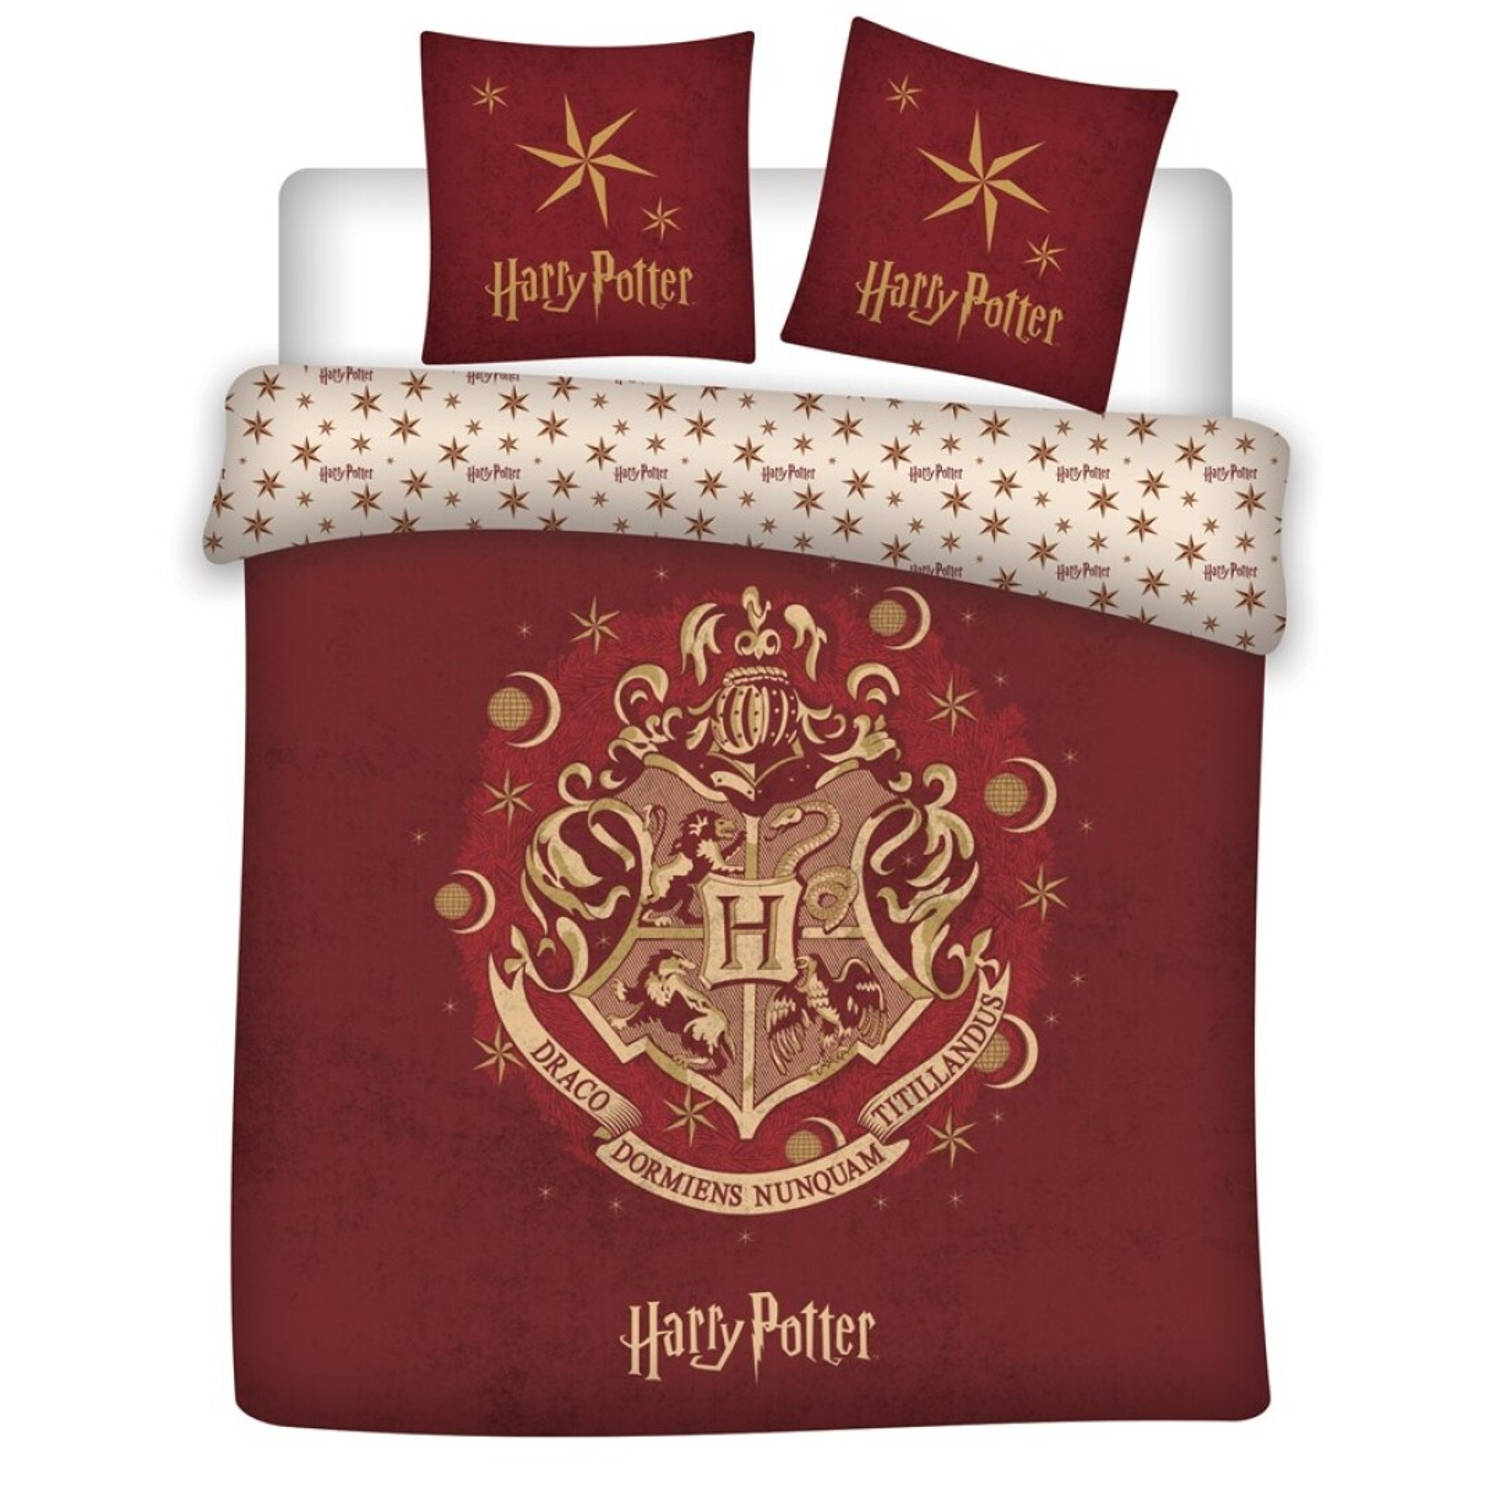 Warner Bros. dekbedovertrek Harry Potter 200 x 200 cm rood